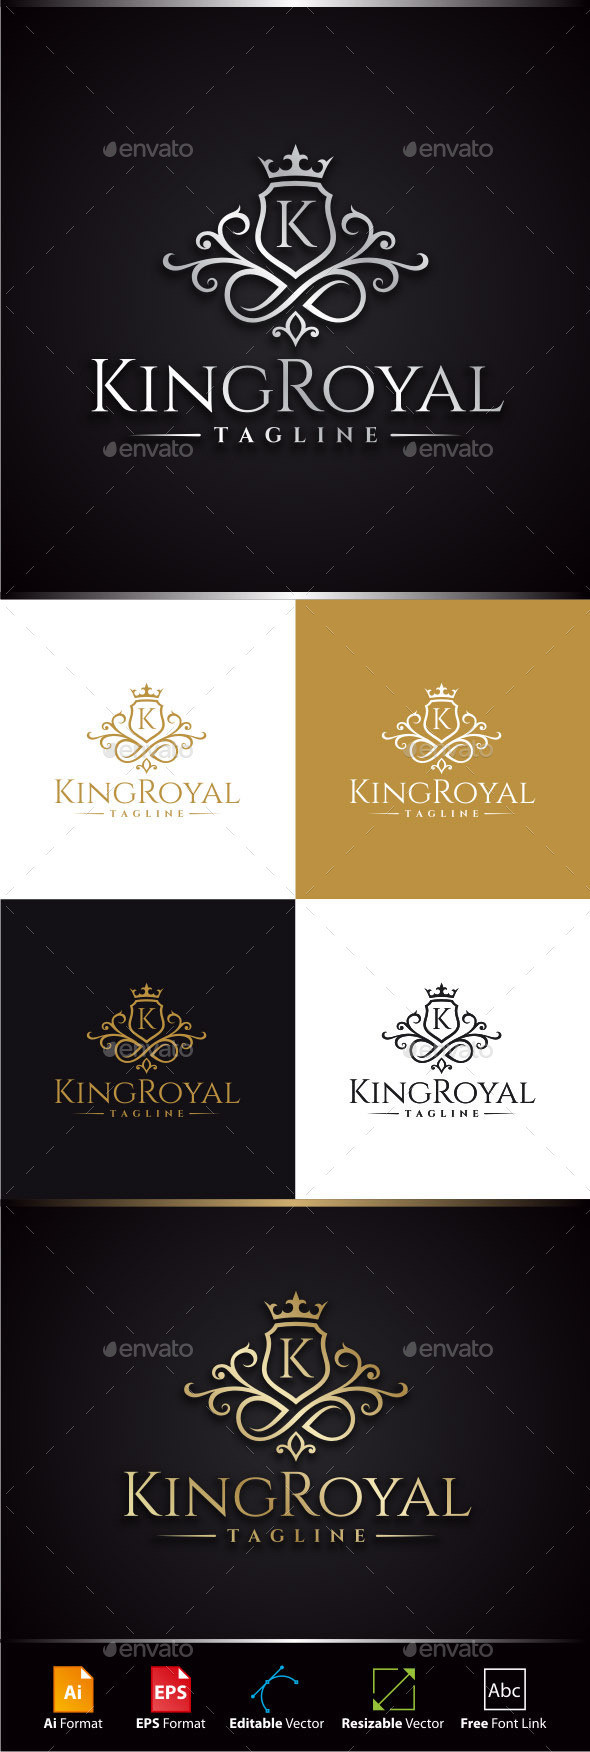 Kingroyalpreview